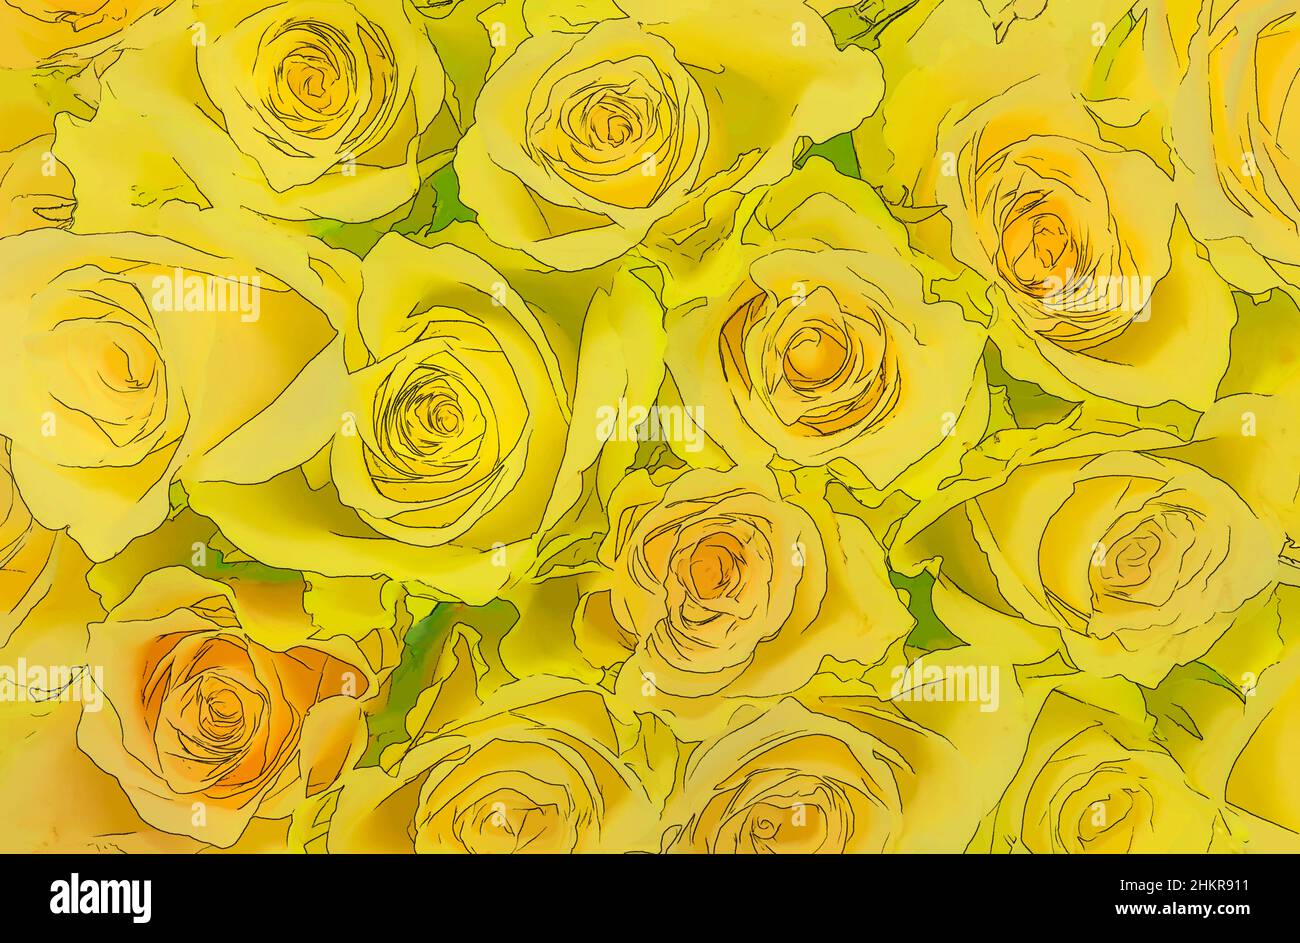 fondo de rosas amarillas como arte de dibujos animados Fotografía de stock  - Alamy